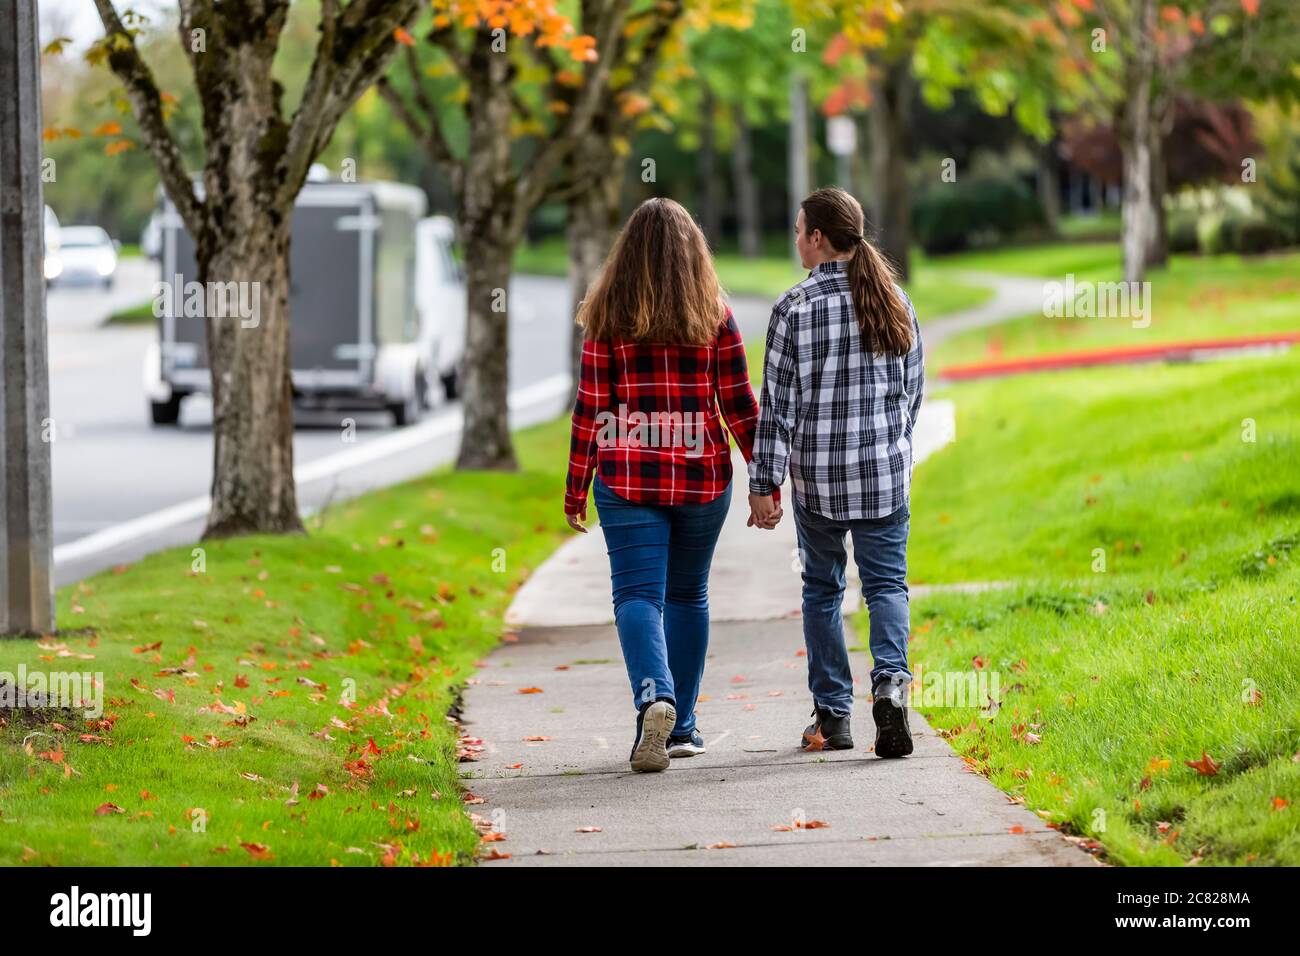 Ein Junge und ein Mädchen im Teenageralter, die einen Bürgersteig mit Händen hinuntergehen; Bothell, Washington, Vereinigte Staaten von Amerika Stockfoto